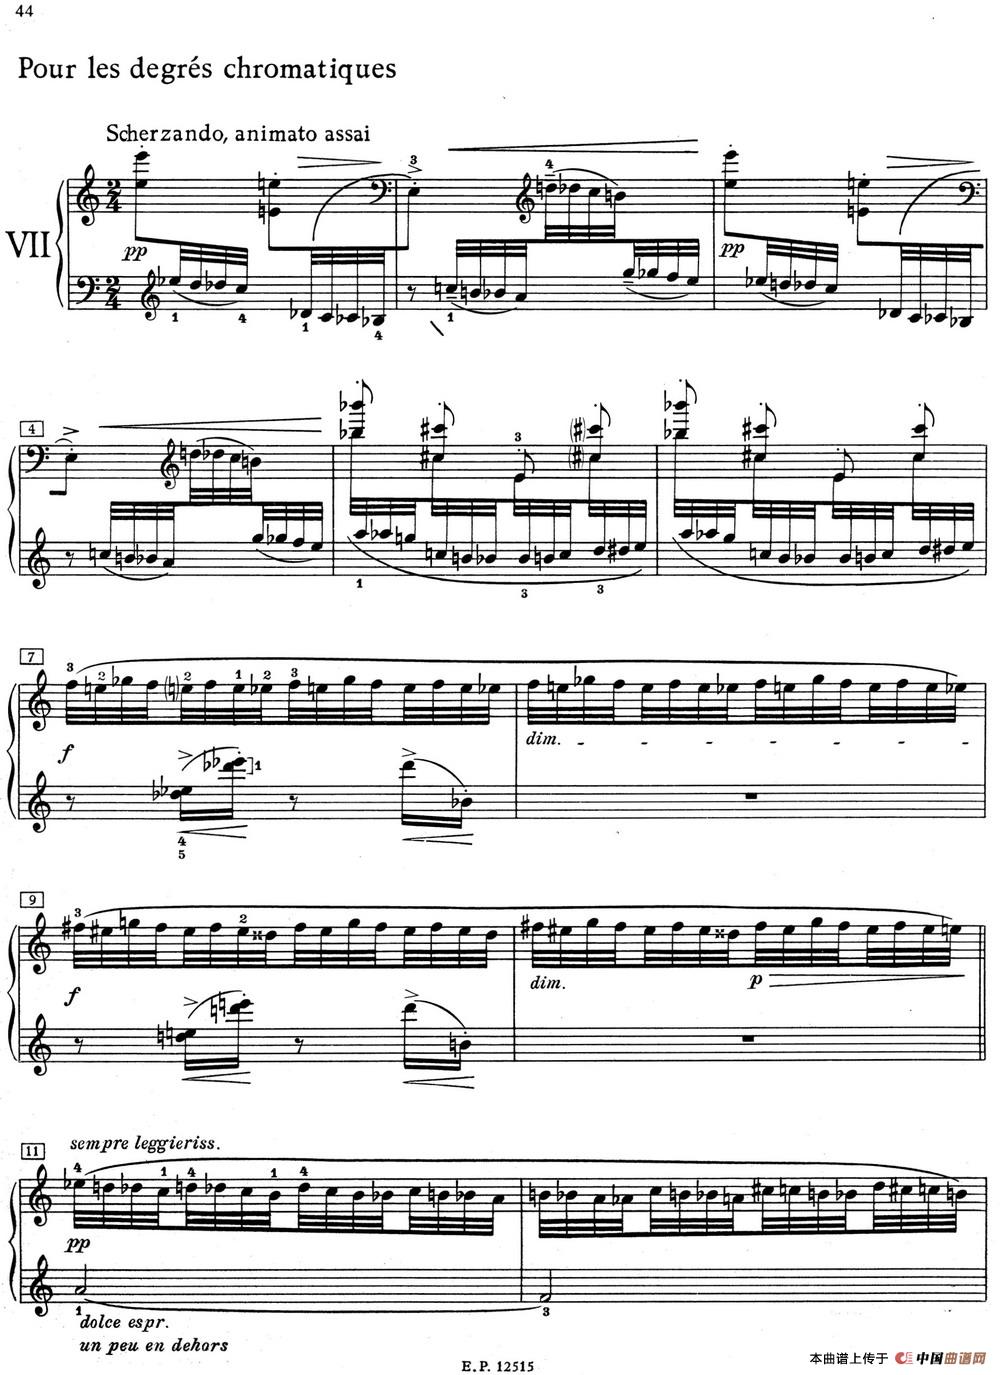 德彪西12首钢琴练习曲（7 半音阶练习v1.0 degrés chromatiques）(1)_7 Pour les degres chromatiques_页面_1.jpg